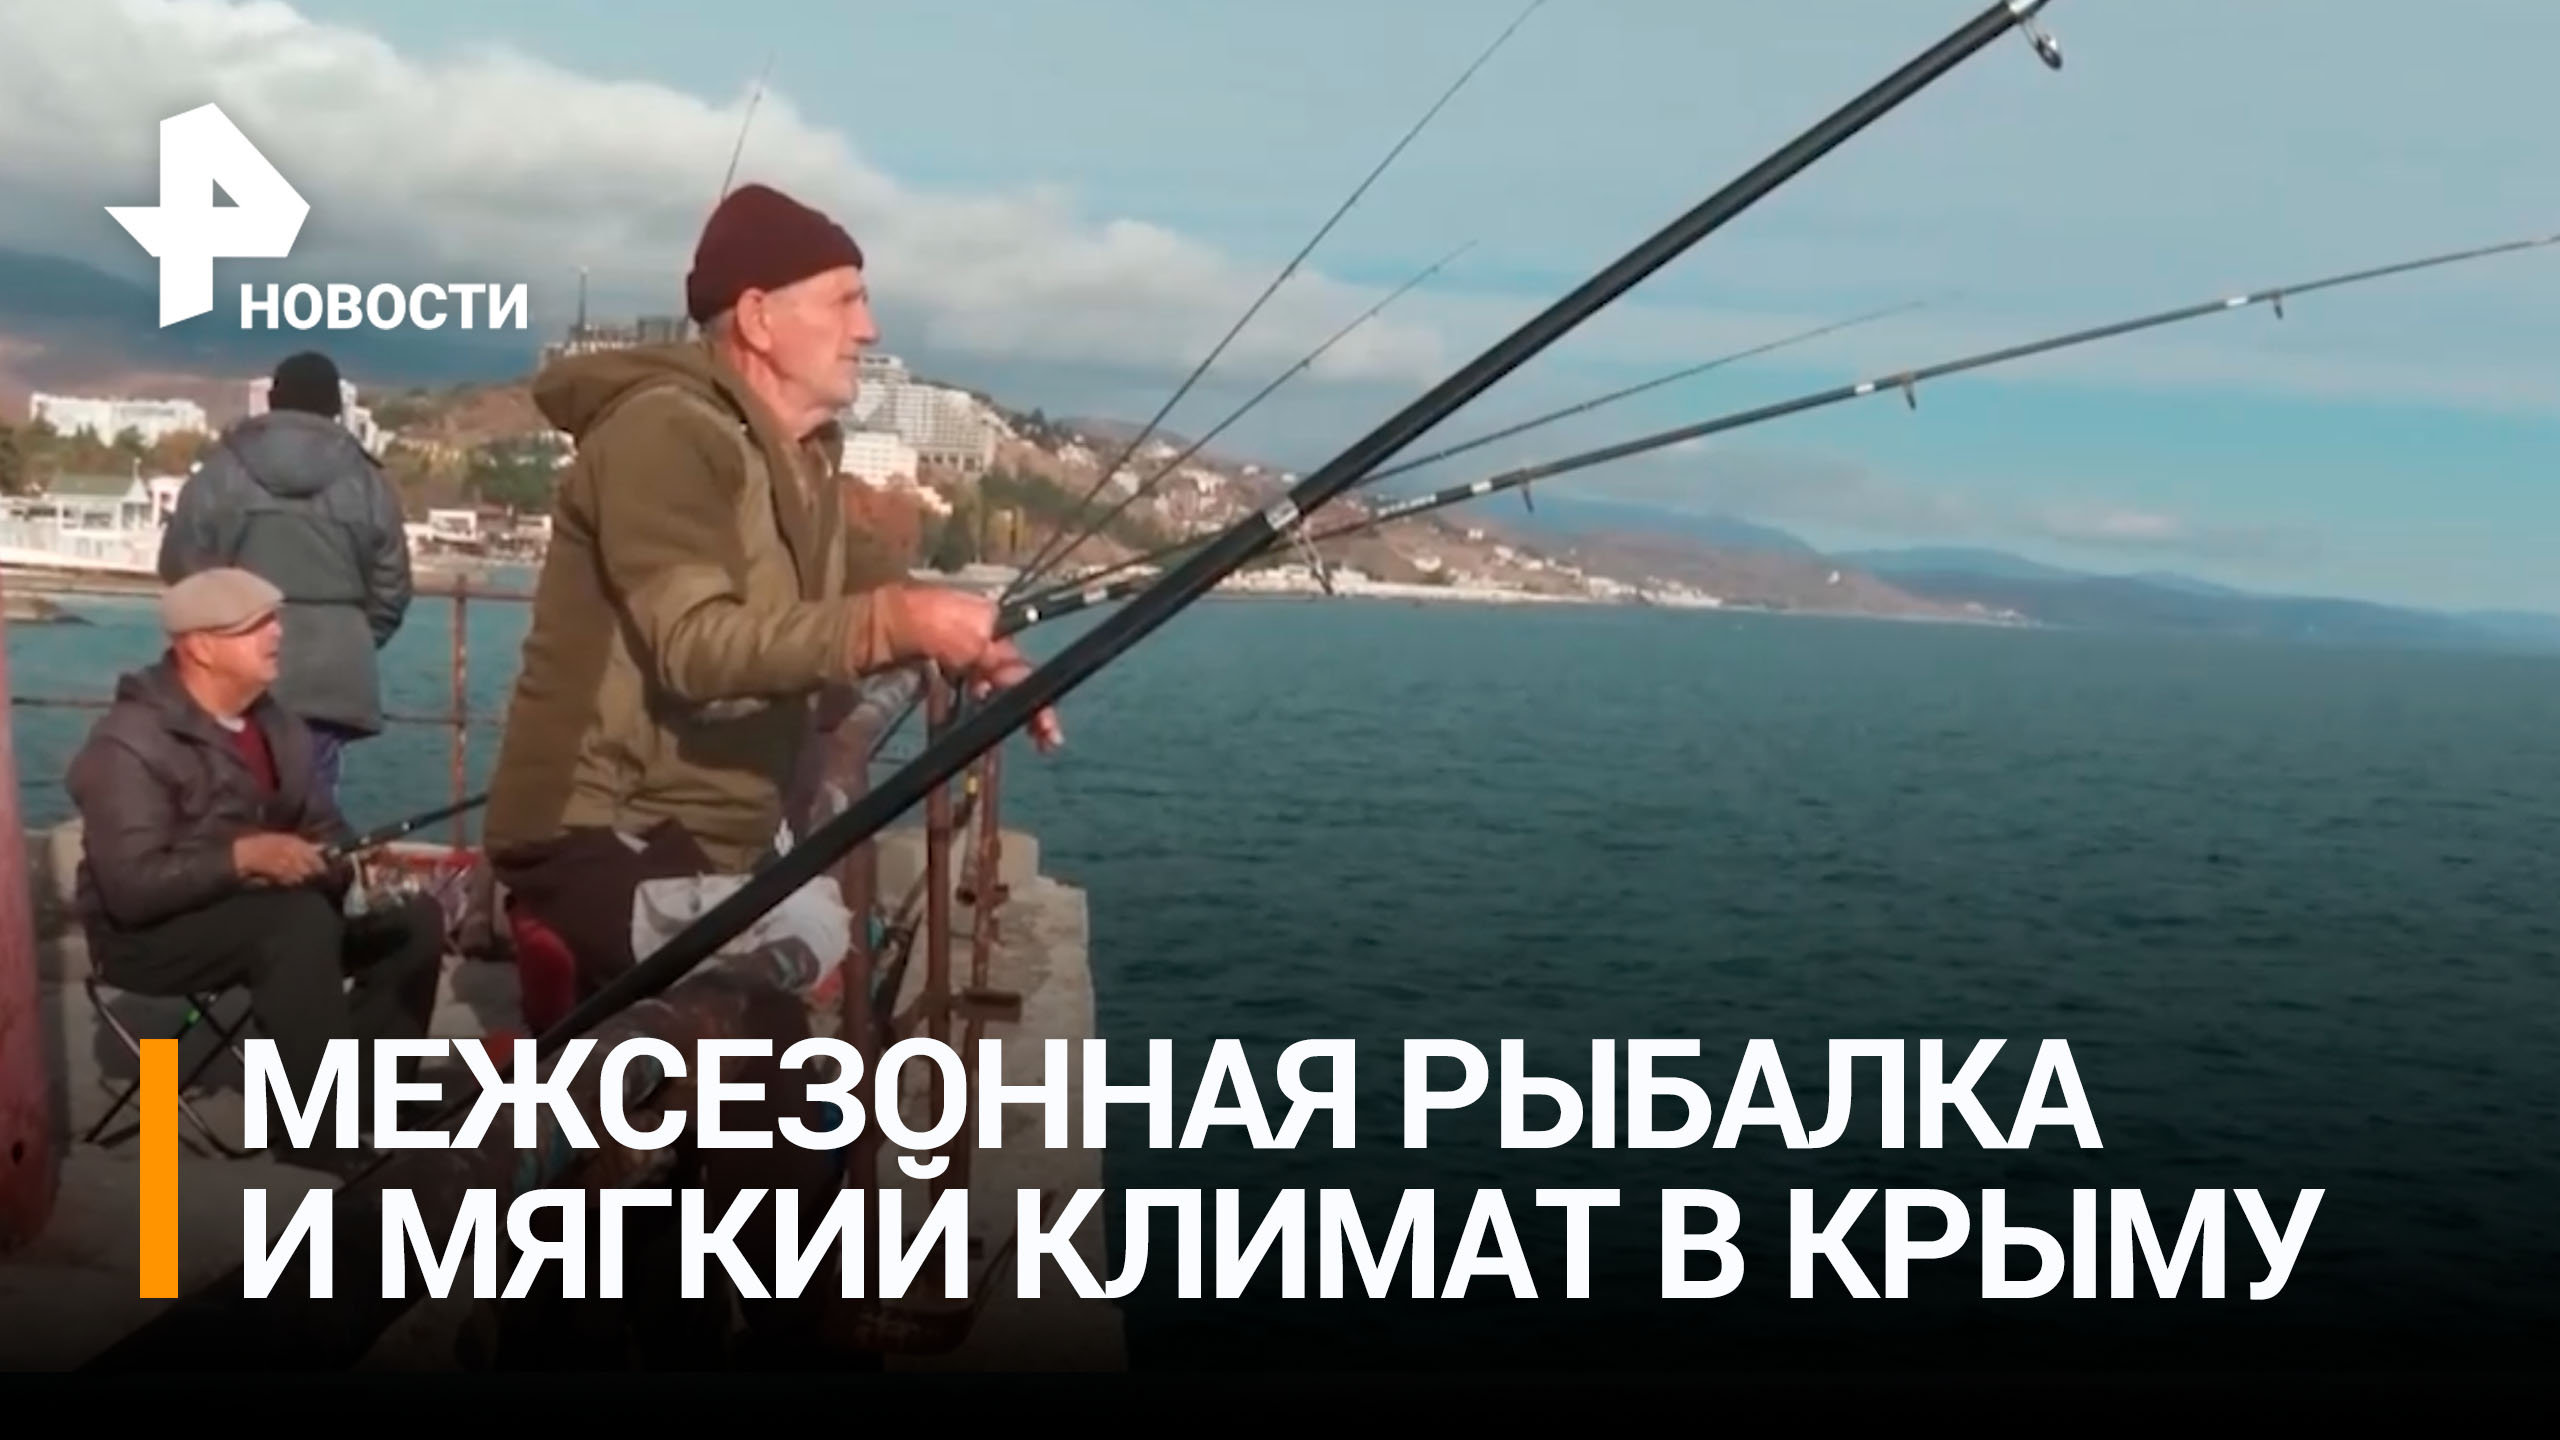 В Крыму разгар сезона рыбной ловли: мягкий климат и рыбалка привлекают туристов / РЕН Новости